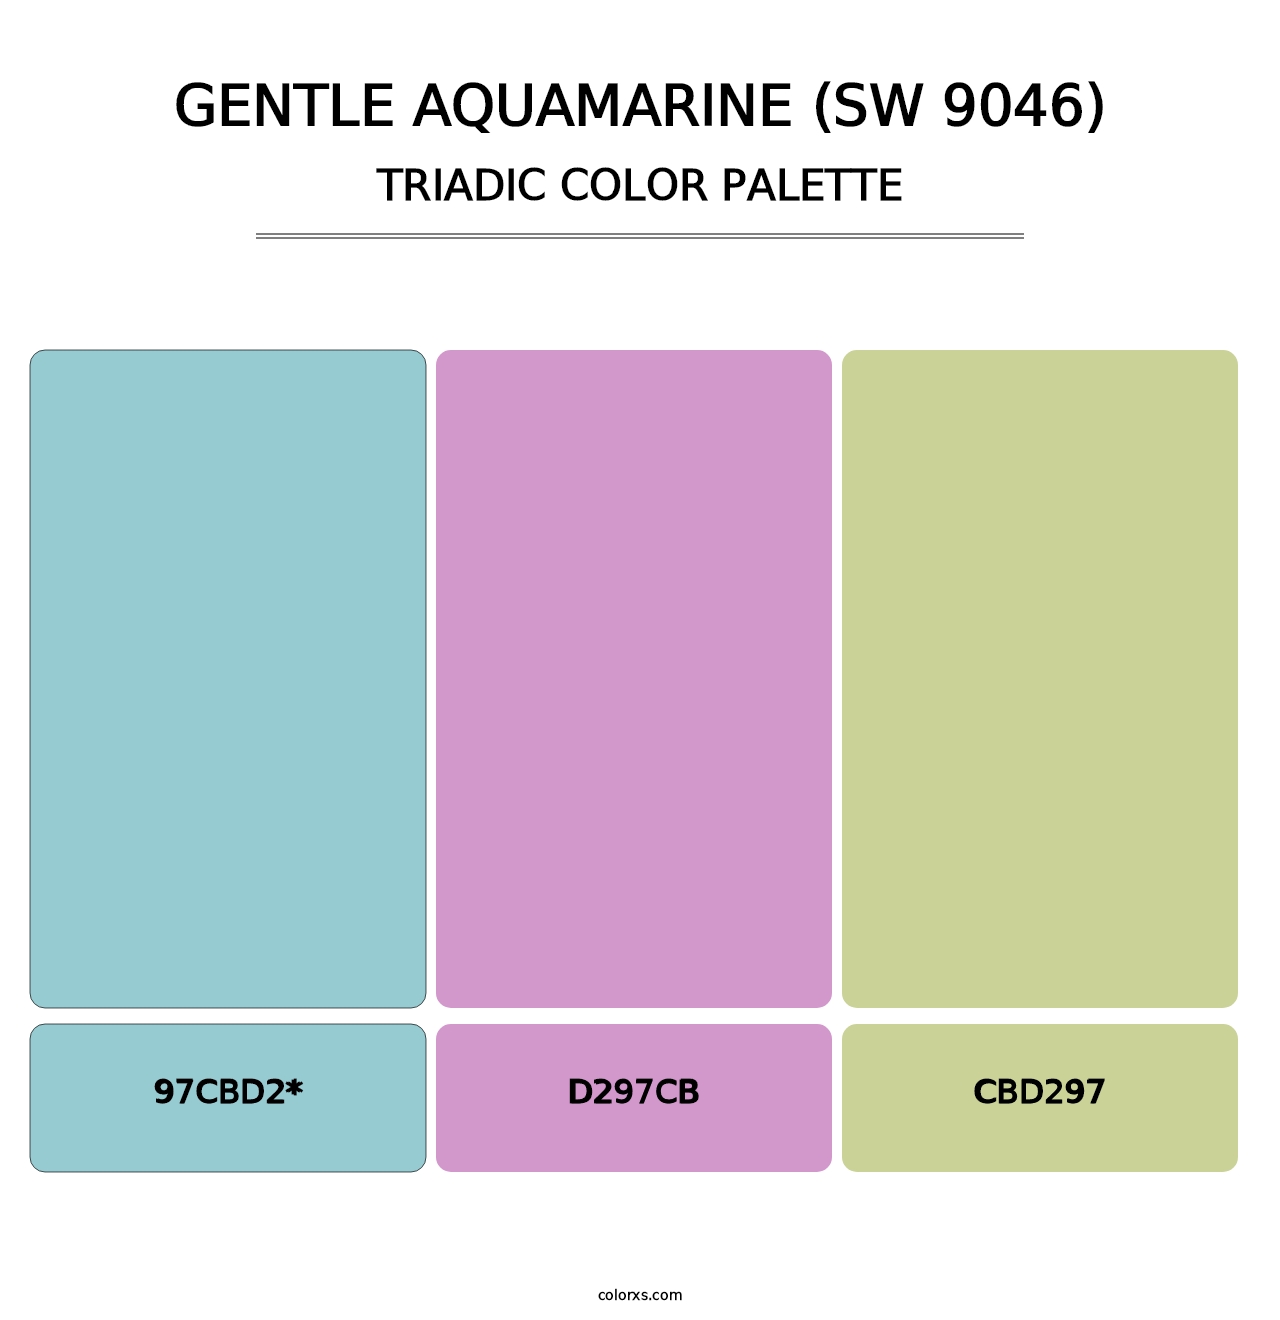 Gentle Aquamarine (SW 9046) - Triadic Color Palette